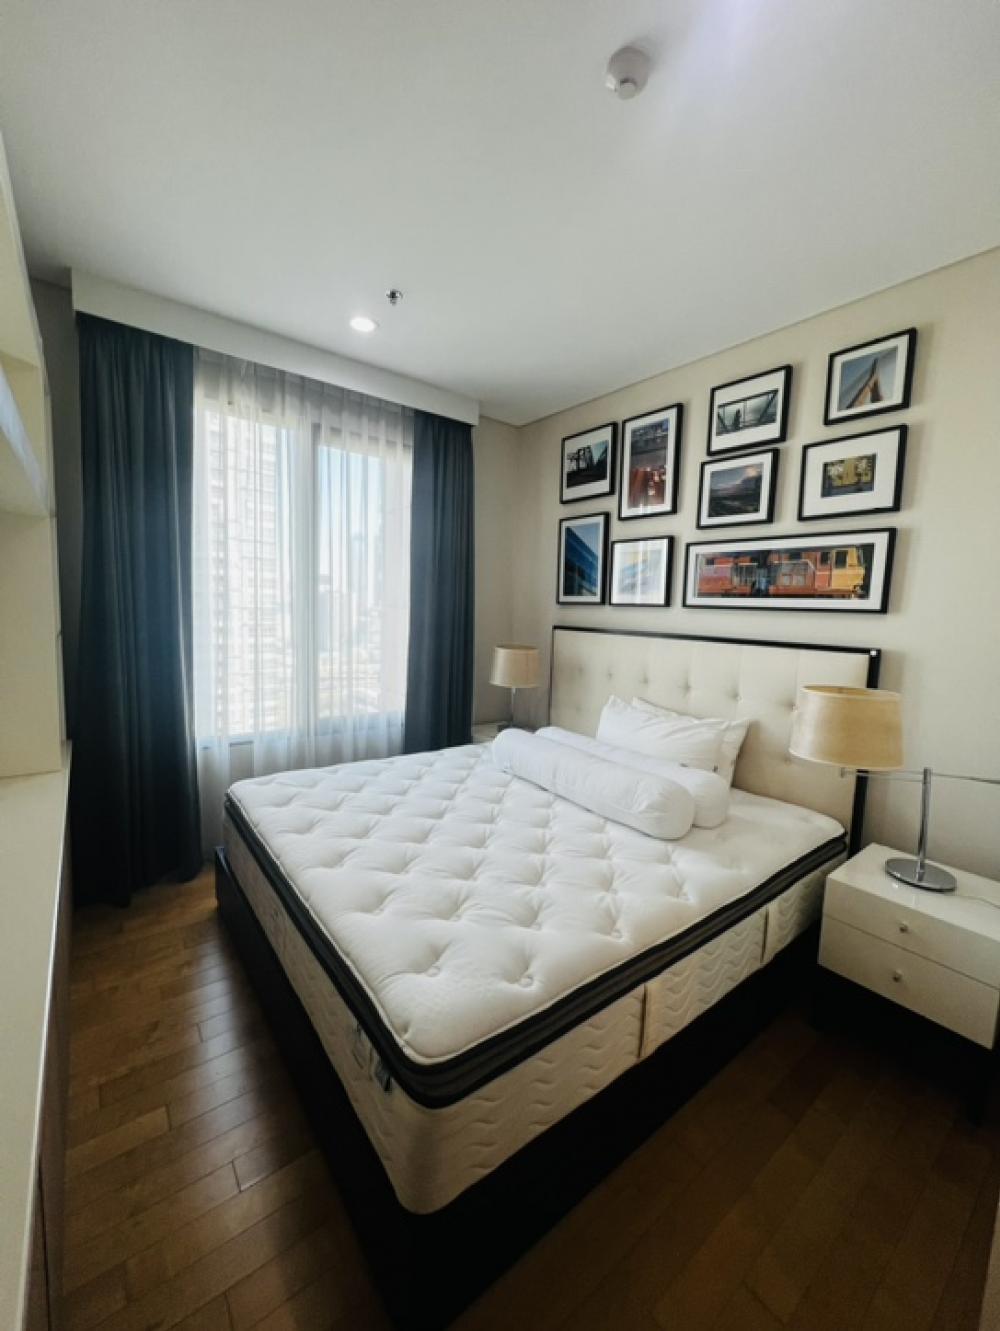 ให้เช่าคอนโดพระราม 9 เพชรบุรีตัดใหม่ RCA : Villa Asoke Condo 1 Bed For Rent Near MRT and Airport Link